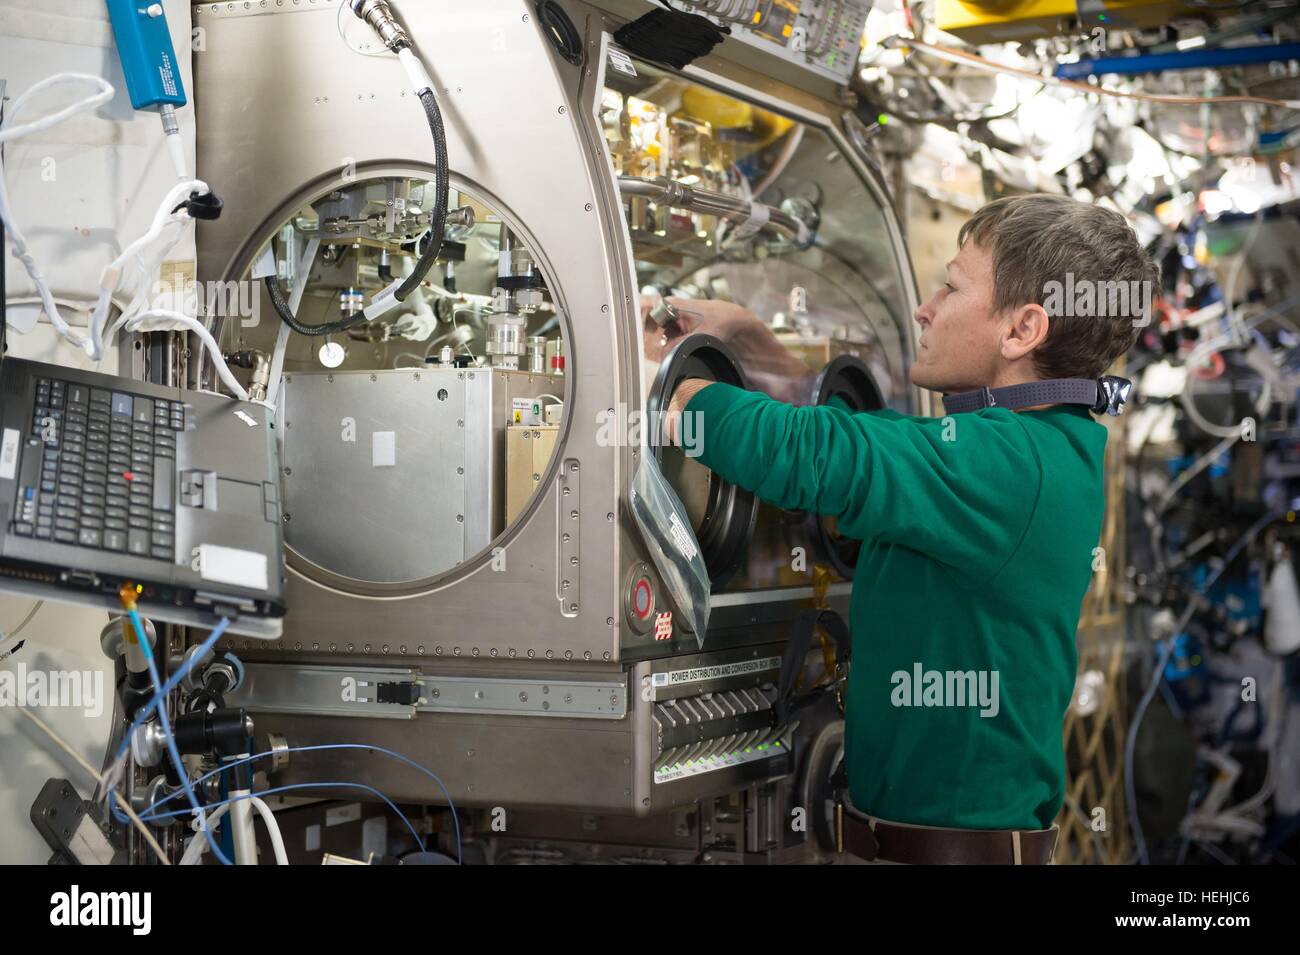 NASA-Expedition 50 erstklassige Besatzung Astronaut, die Peggy Whitson verpackt Bed Reactor Experiment innerhalb der internationalen Raumstation Microgravity Science Glovebox 1. Dezember 2016 in der Erdumlaufbahn einrichtet. Stockfoto